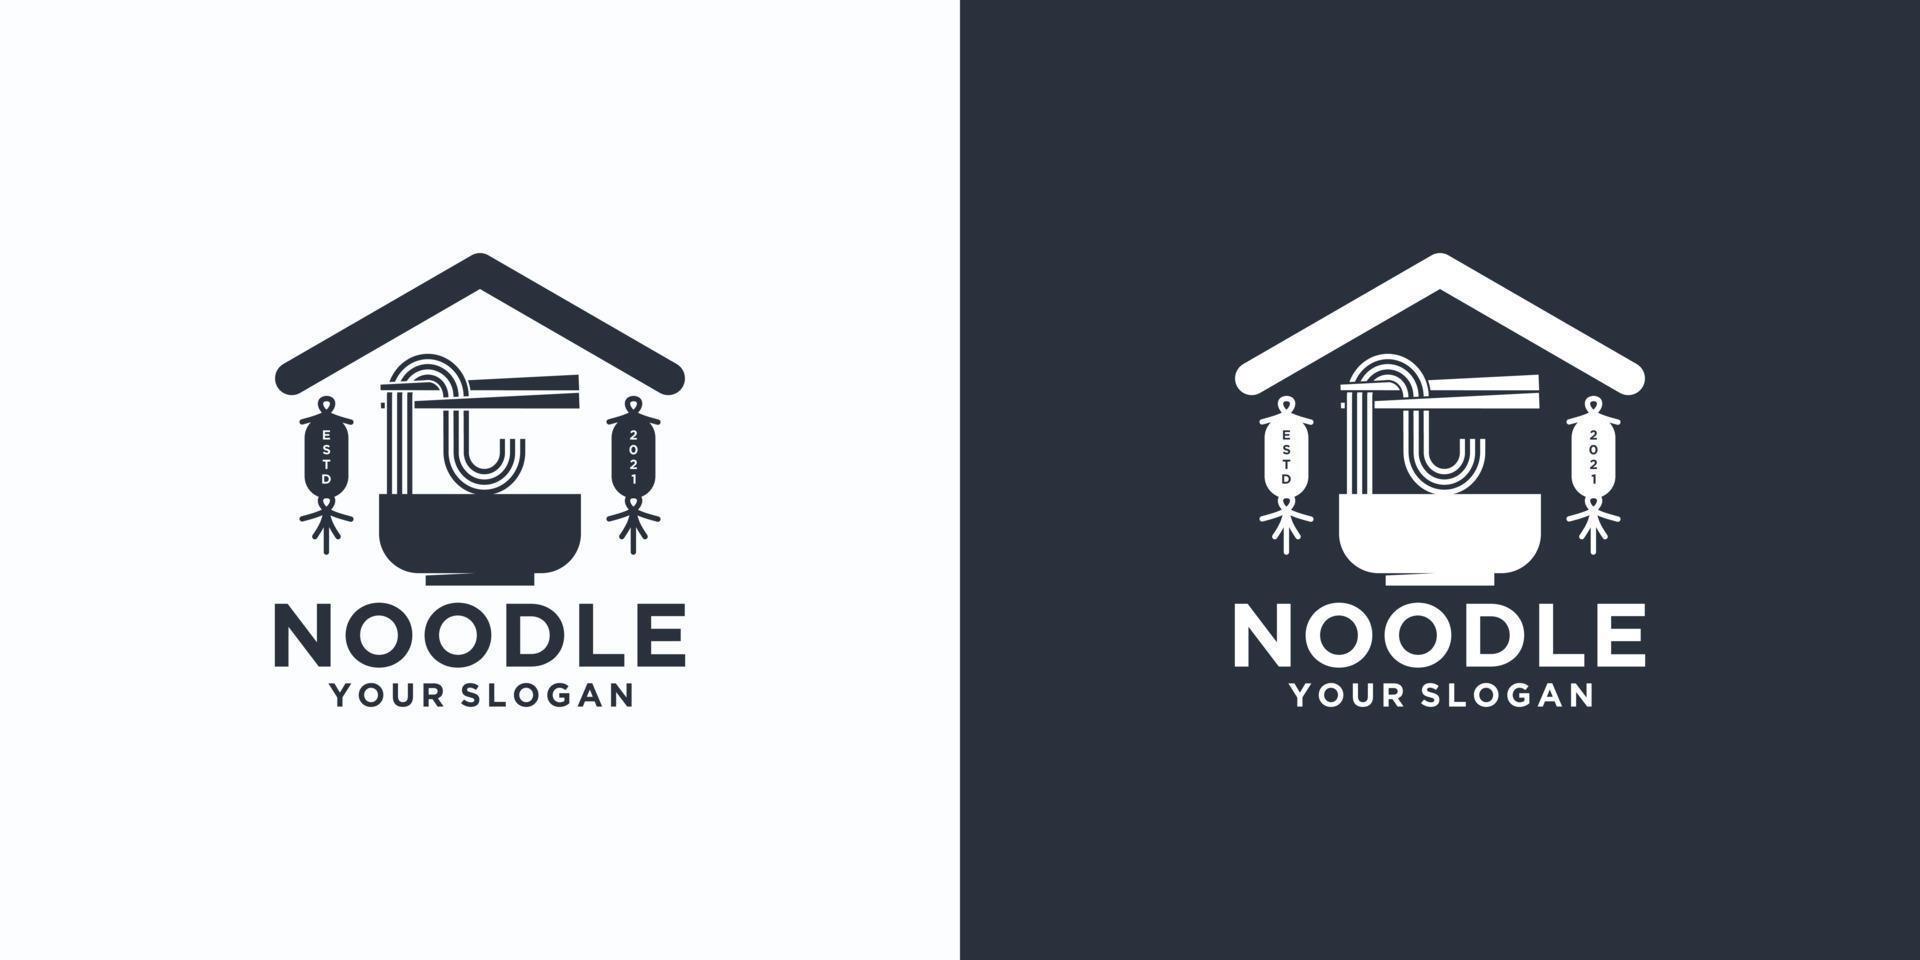 Riferimento logo noodle, con stile iniziale, negozio di noodle, ramen, udon, negozio di alimentari e altro. vettore